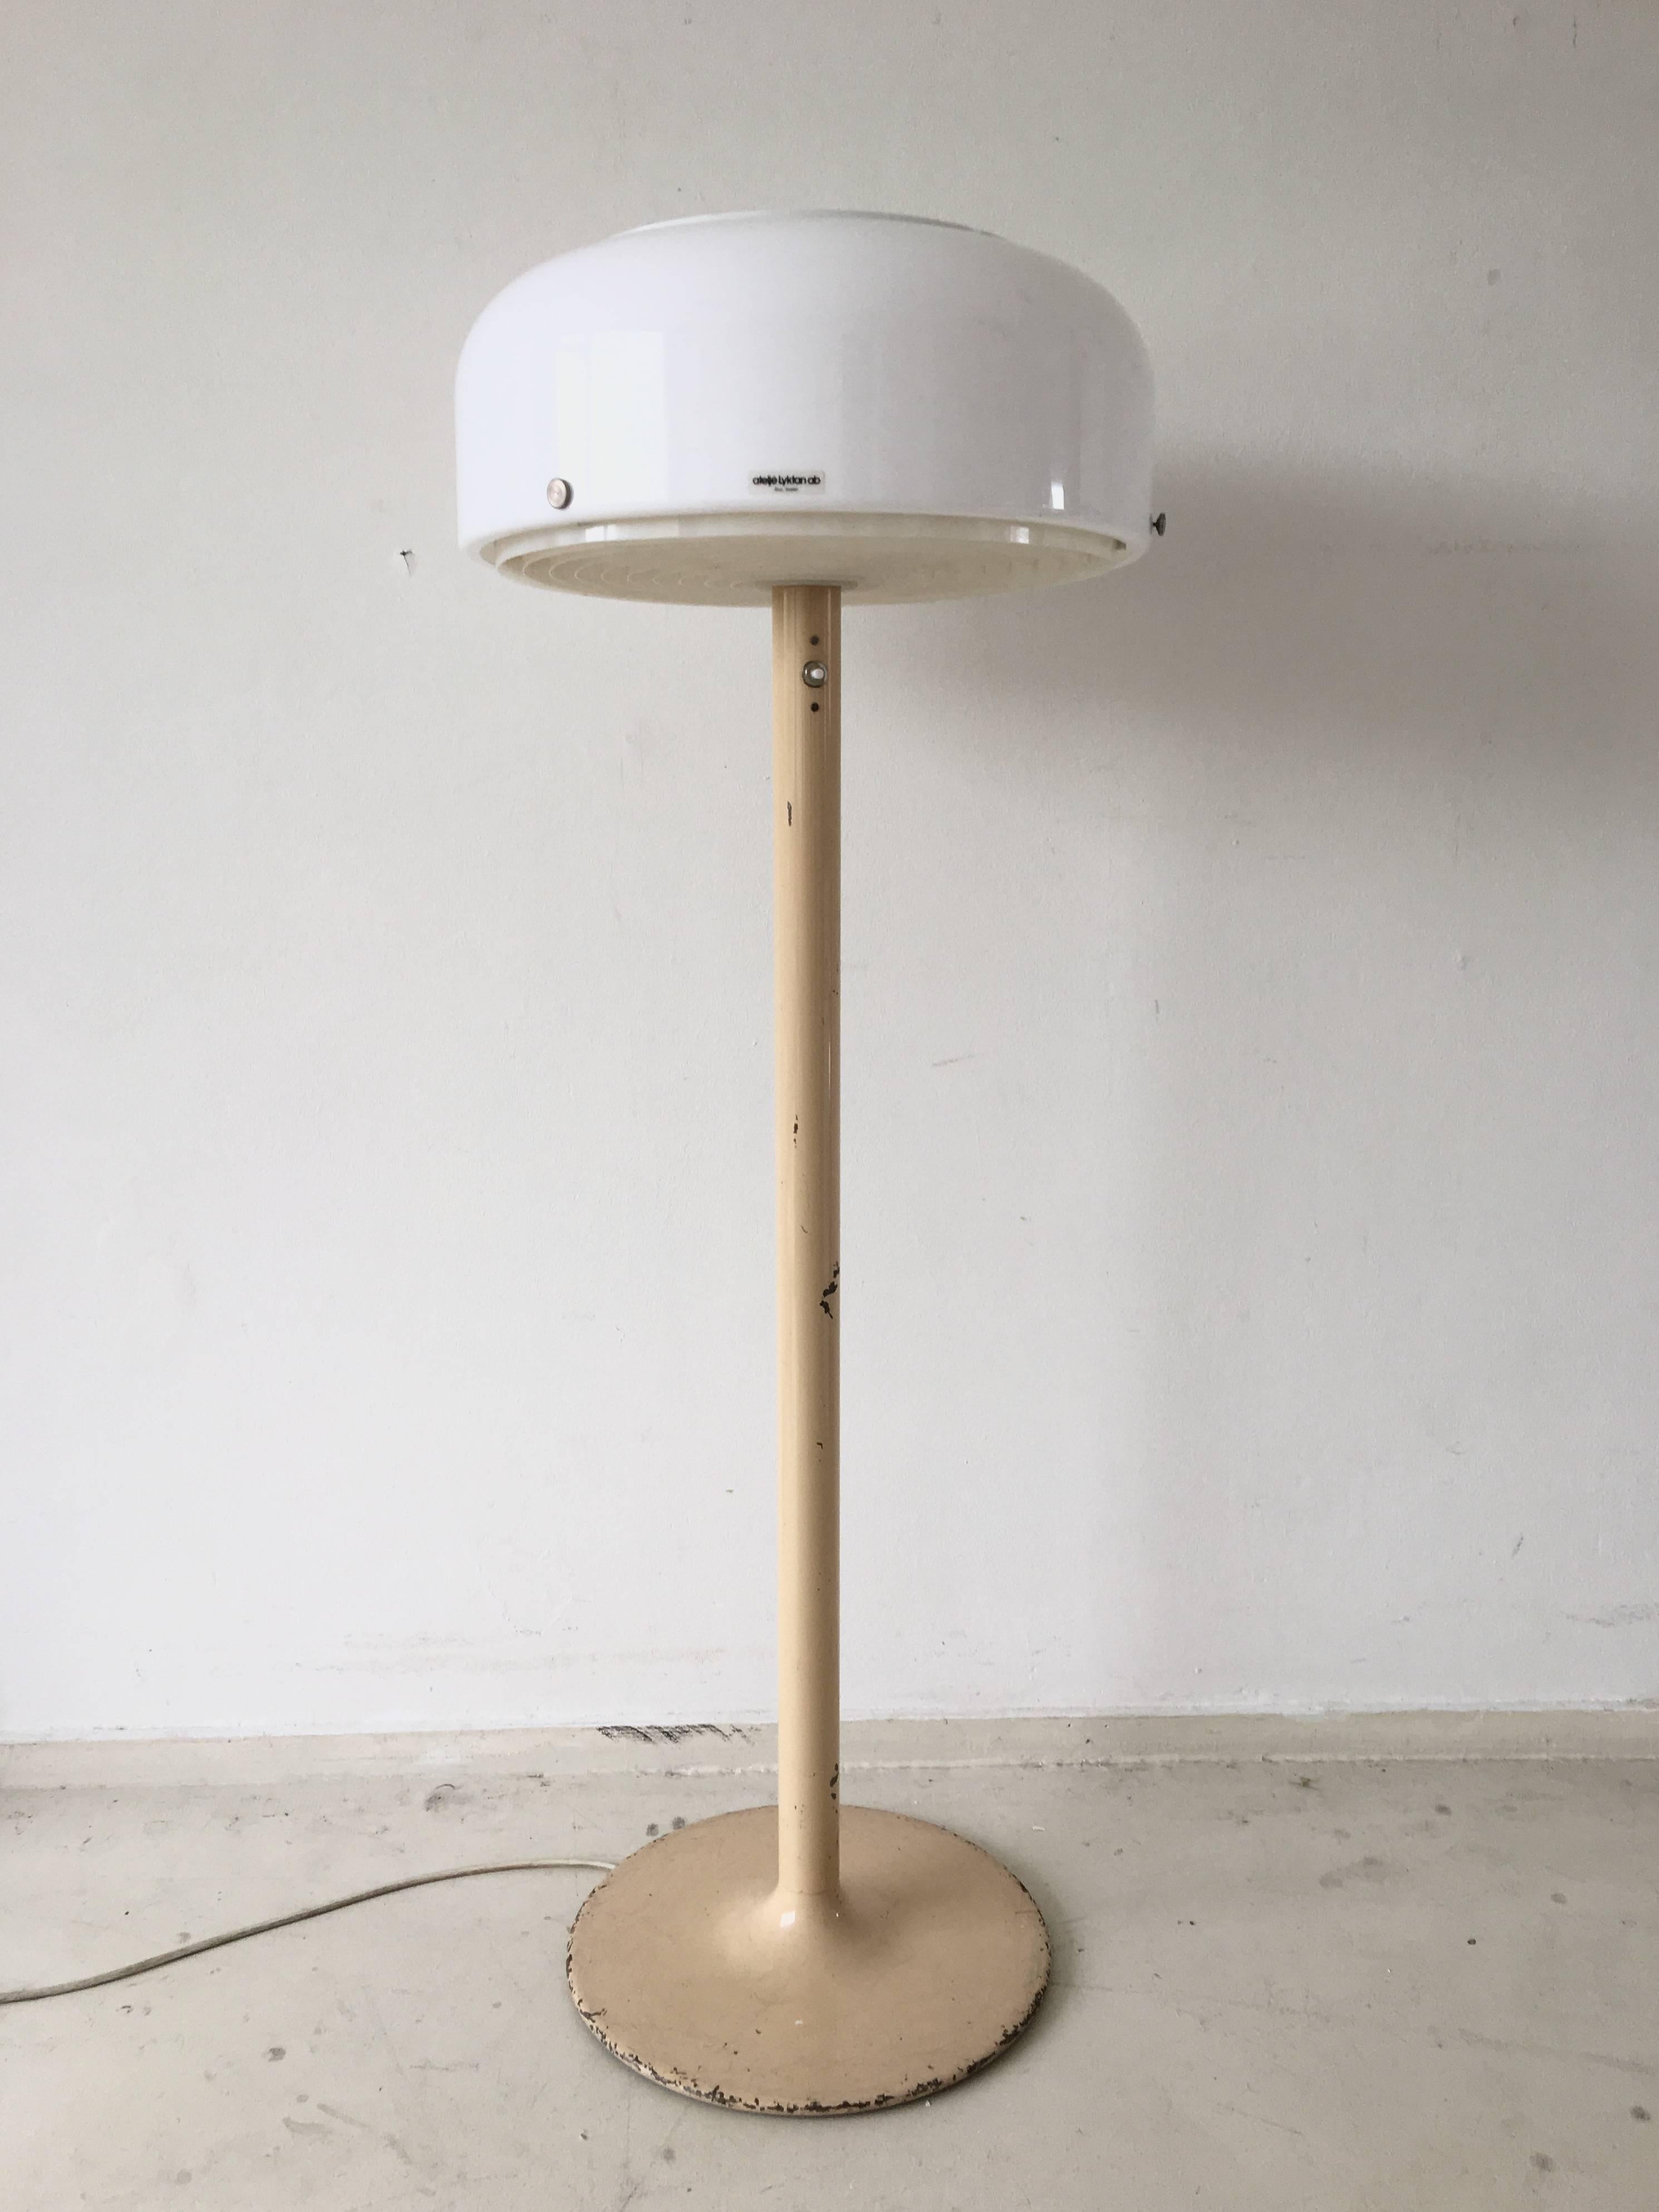 Diese schwedische Industrial-Stehlampe wurde von Anders Pehrson um 1970 herum entworfen. Sie hat einen cremefarbenen Metallsockel und einen weißen Acrylschirm. Im Inneren des Schirms sorgt ein Kunststoffring für eine gute Verteilung des Lichts.
Die